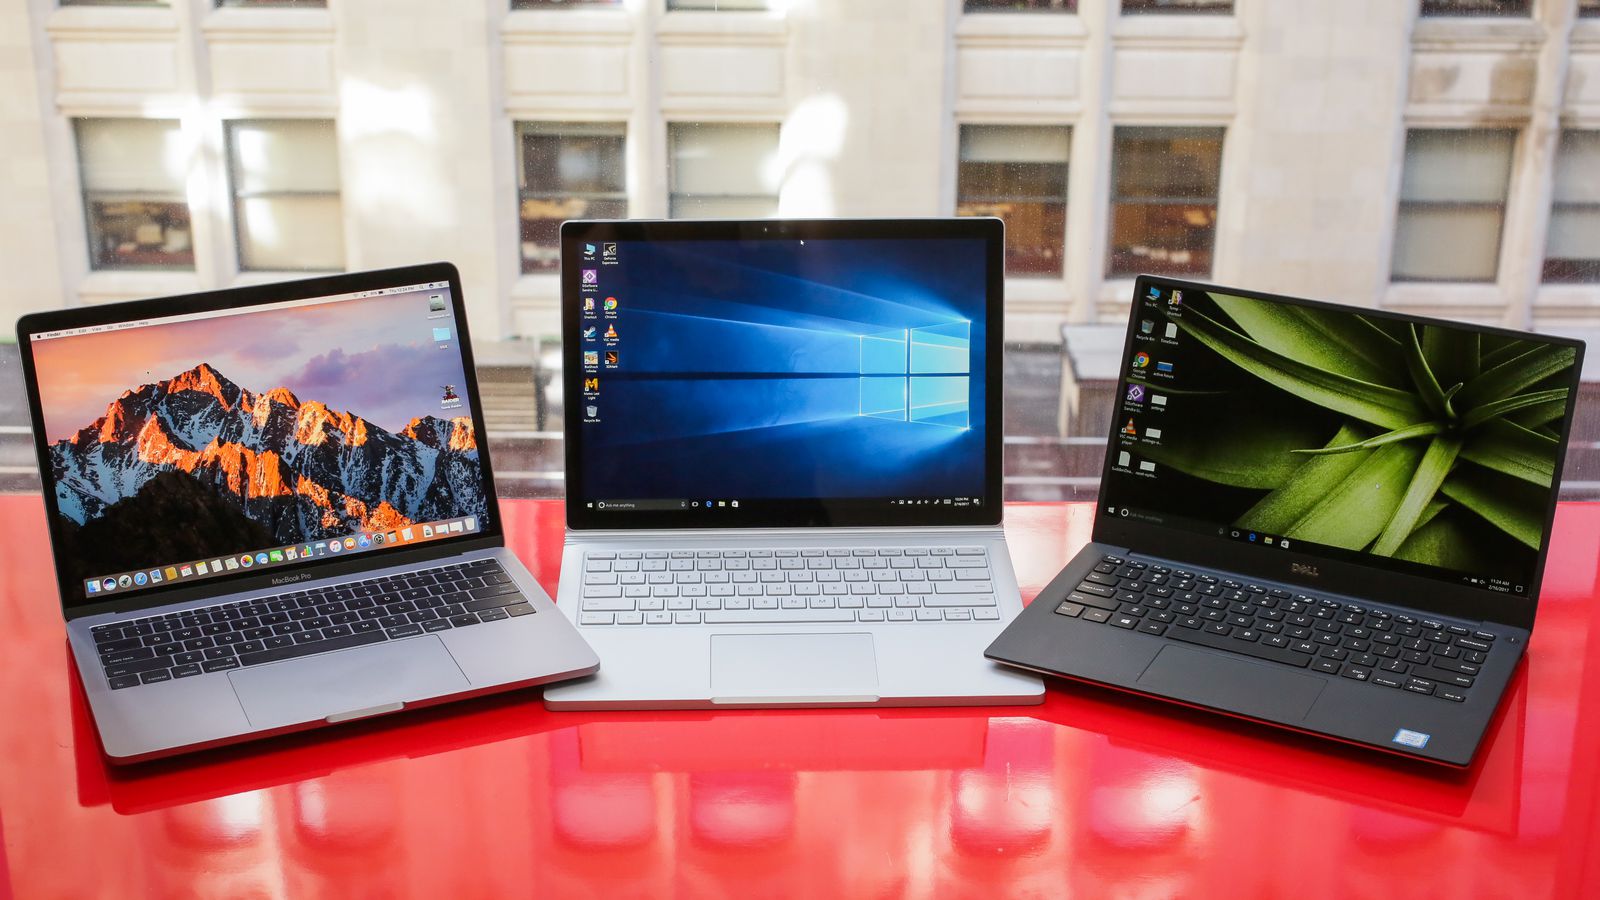 De ce ar fi bine sa iti cumperi un laptop second hand?